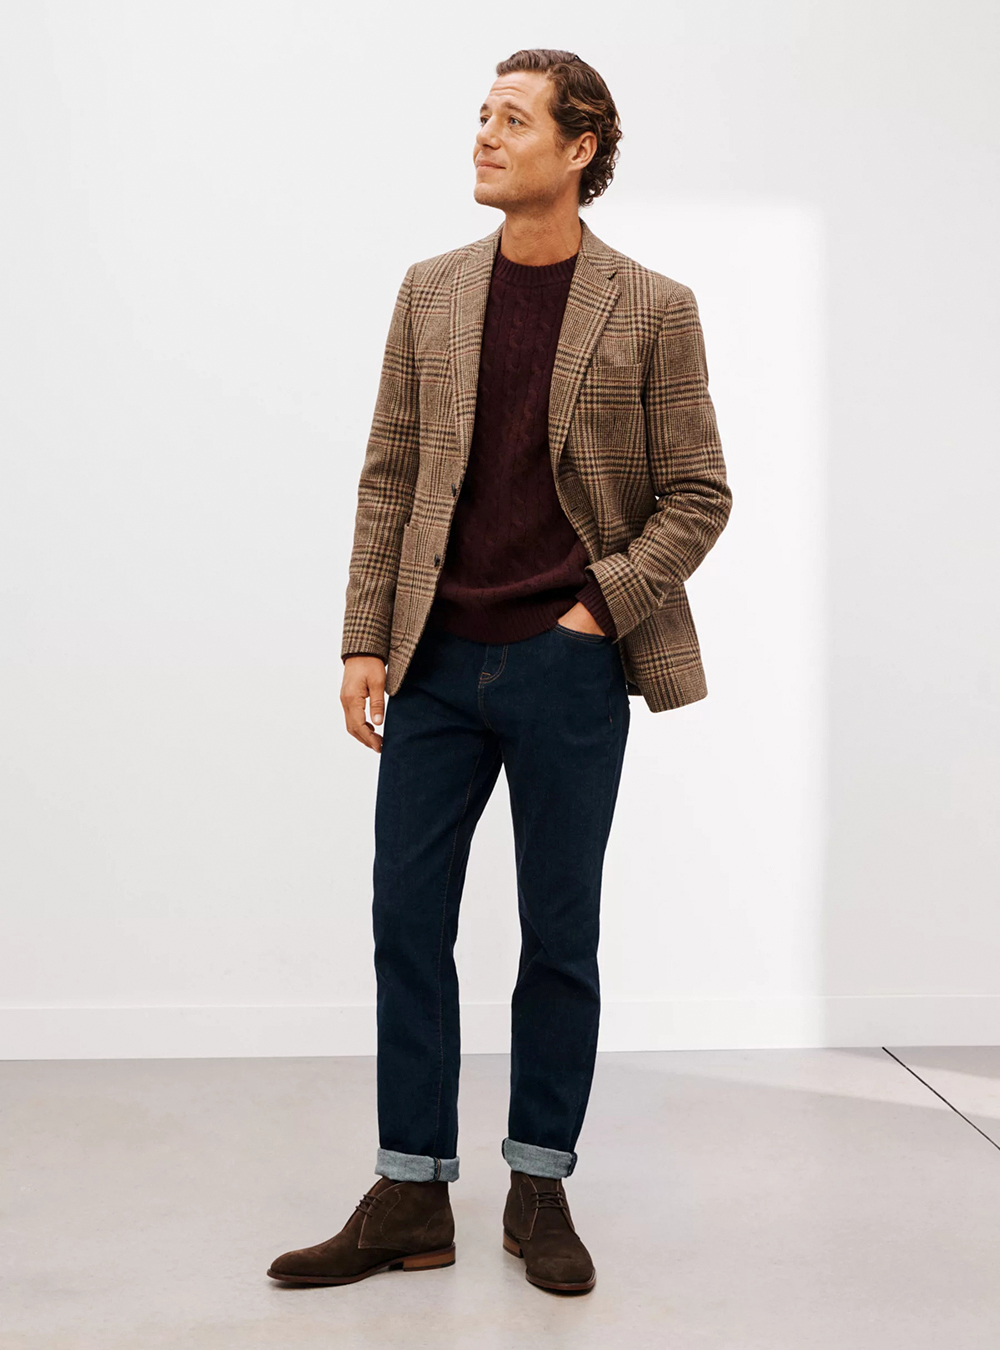 brown plaid blazer, burgundy sweater, dark blue jeans, and brown suede Chukka